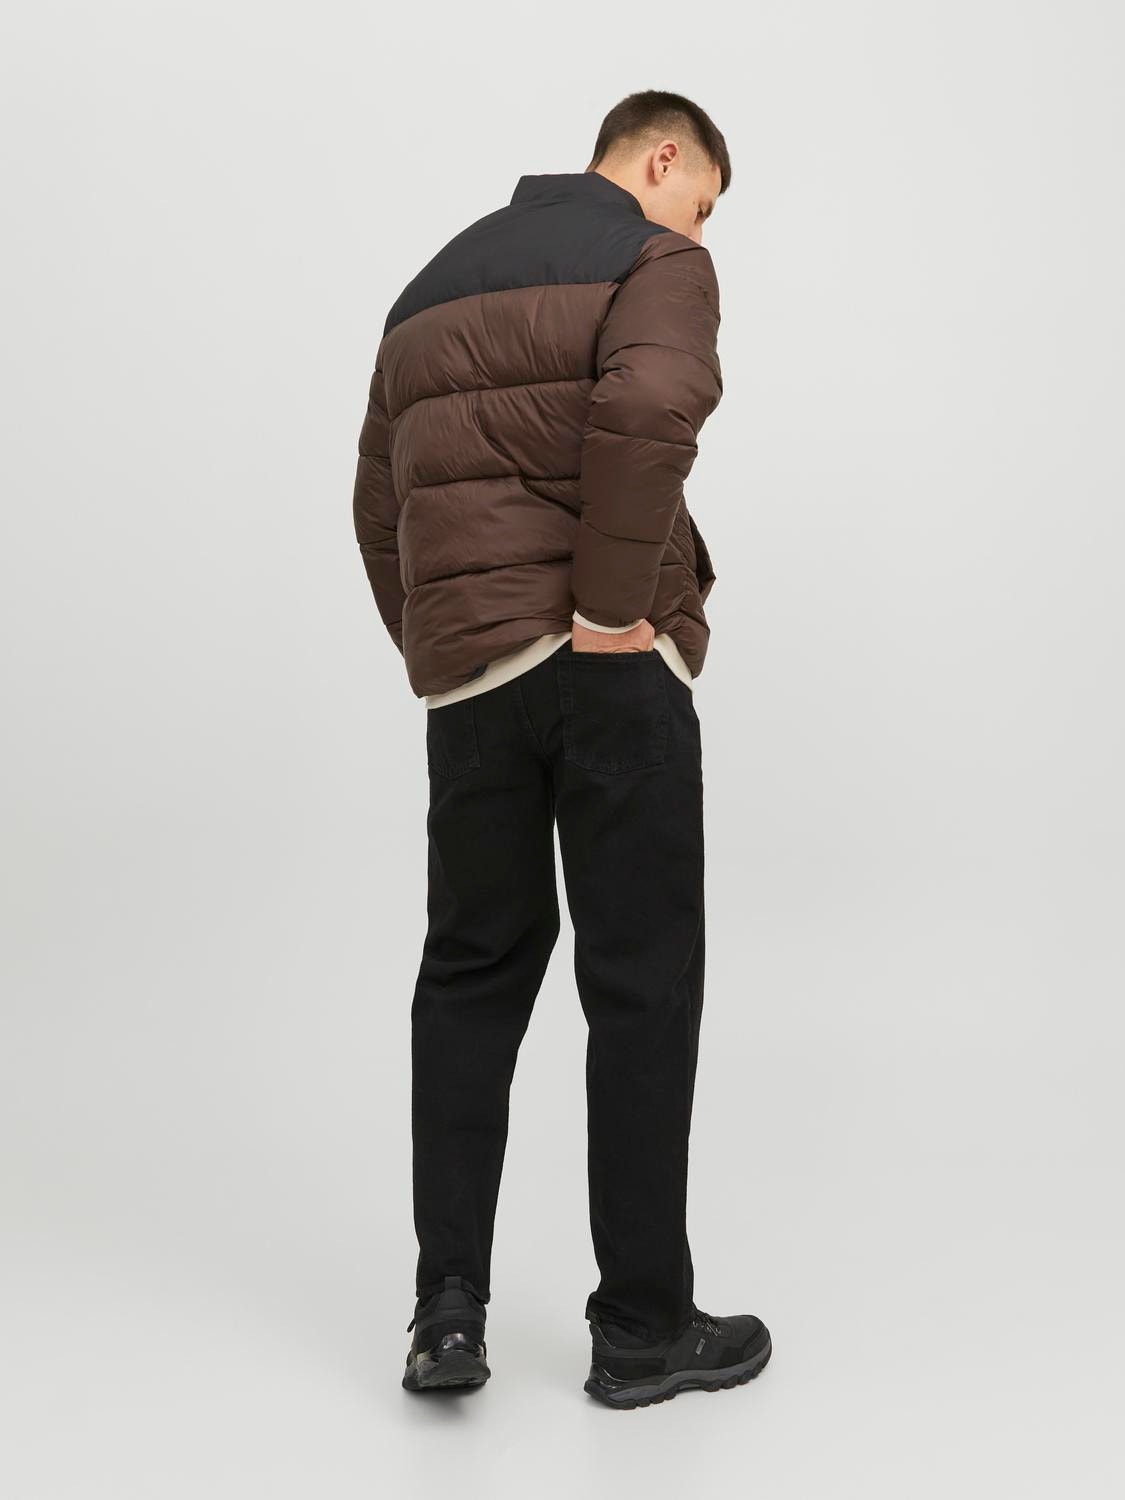 Puffer jacket with 50% discount! | Jack & Jones®